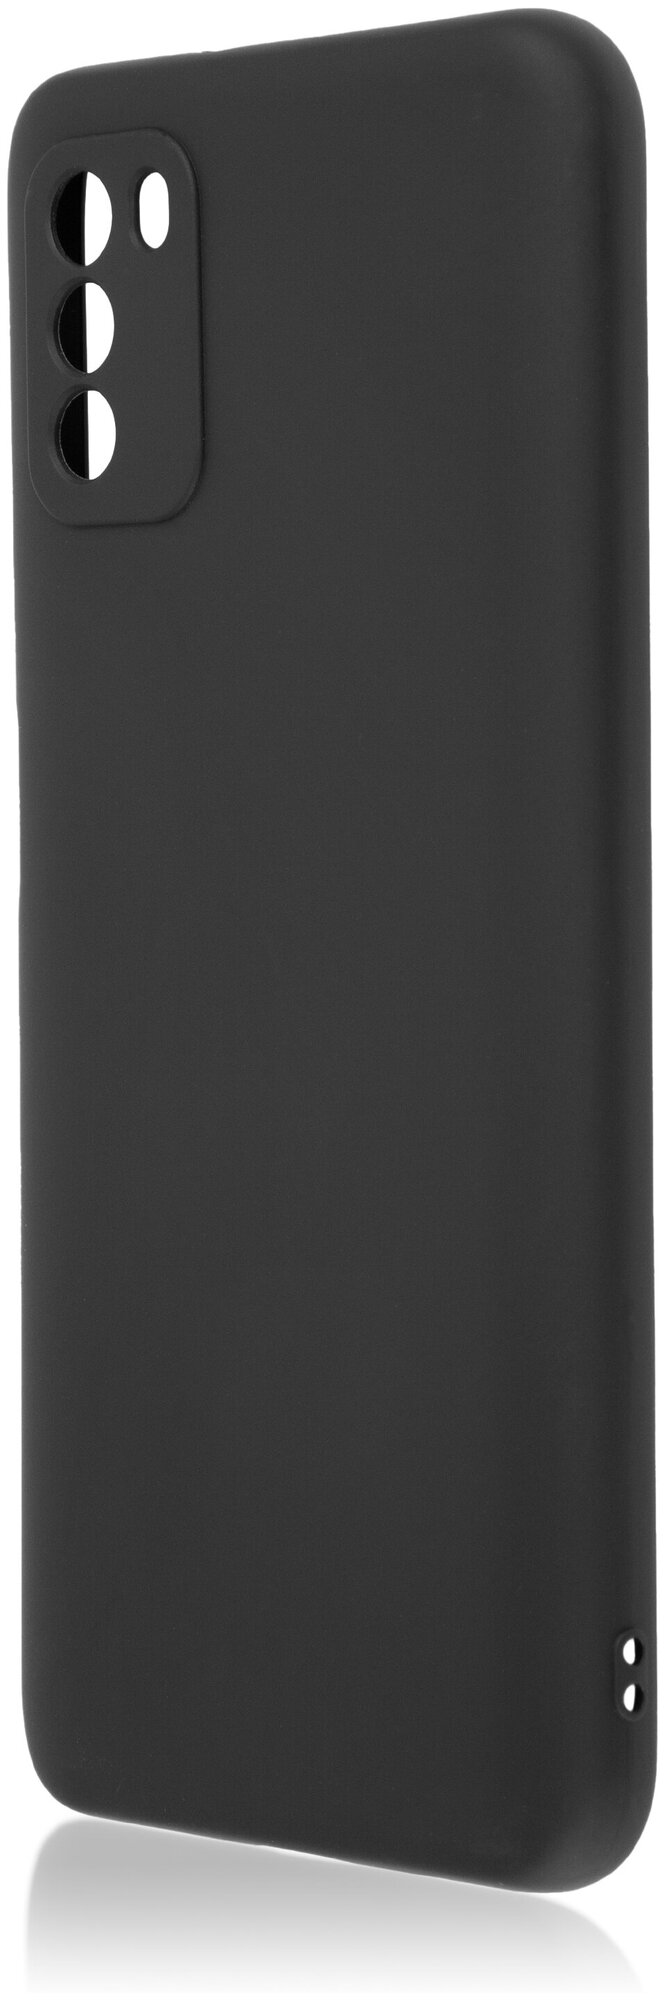 Чехол-накладка ROSCO для Xiaomi Poco M3 (Сяоми Поко М3, Ксиаоми) тонкий c матовым SOFT-TOUCH покрытие и защитой модуля камер, противоударный, черный